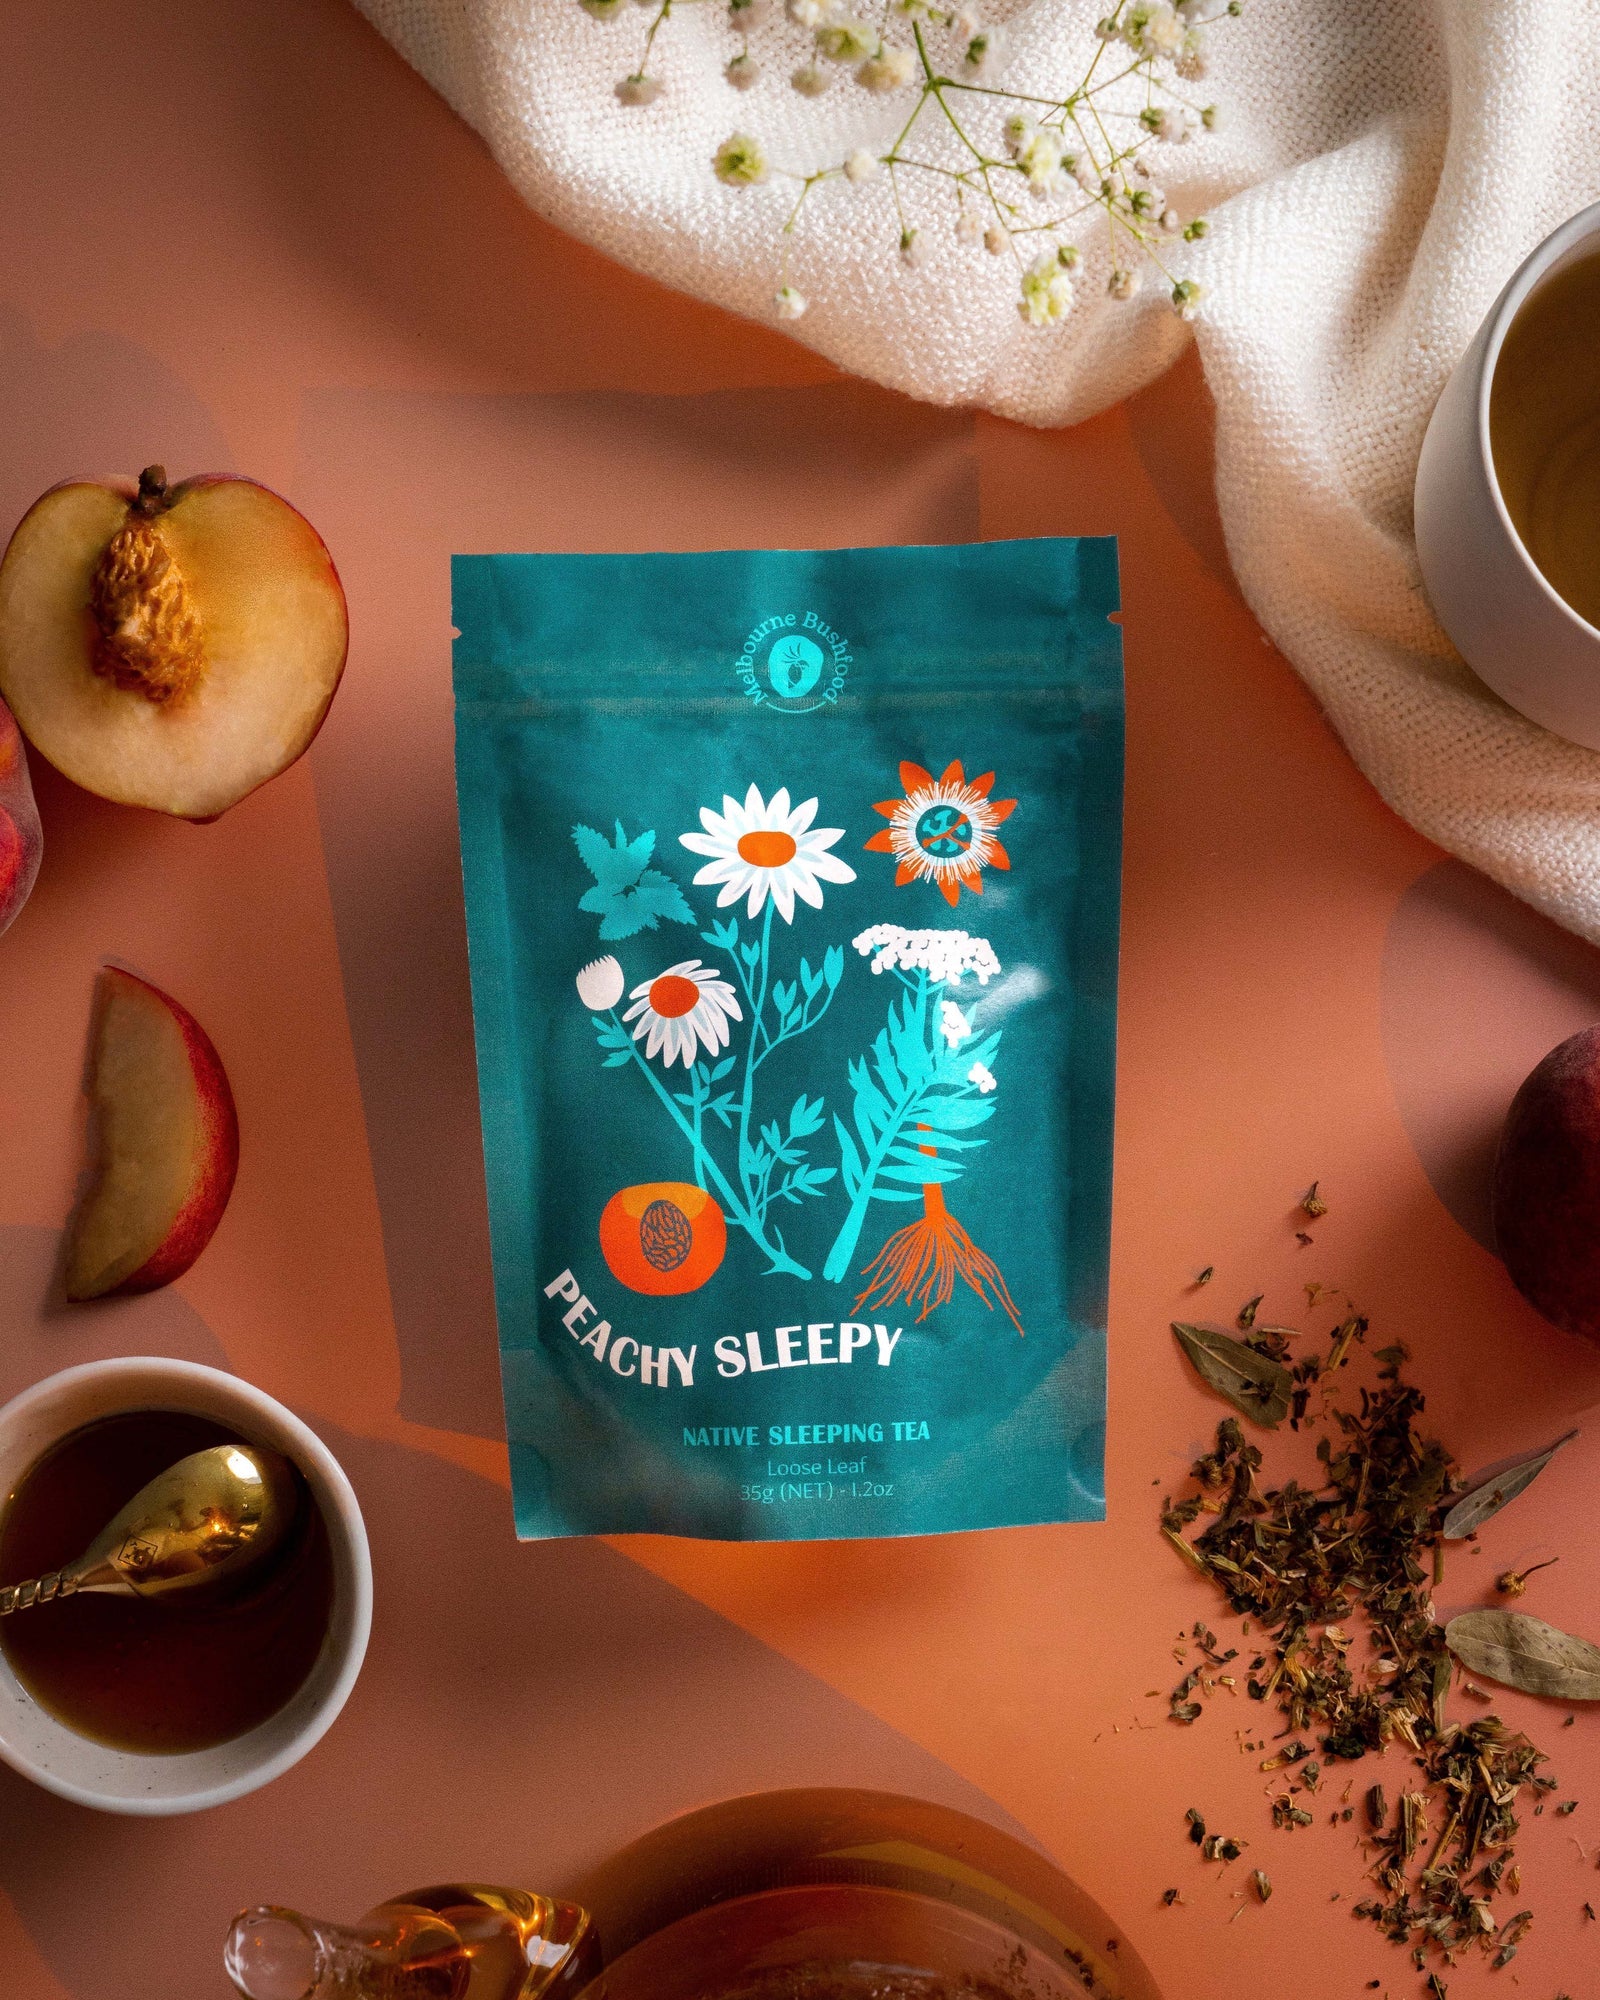 Melbourne Bush Foods Native Tea - Peachy Sleepy